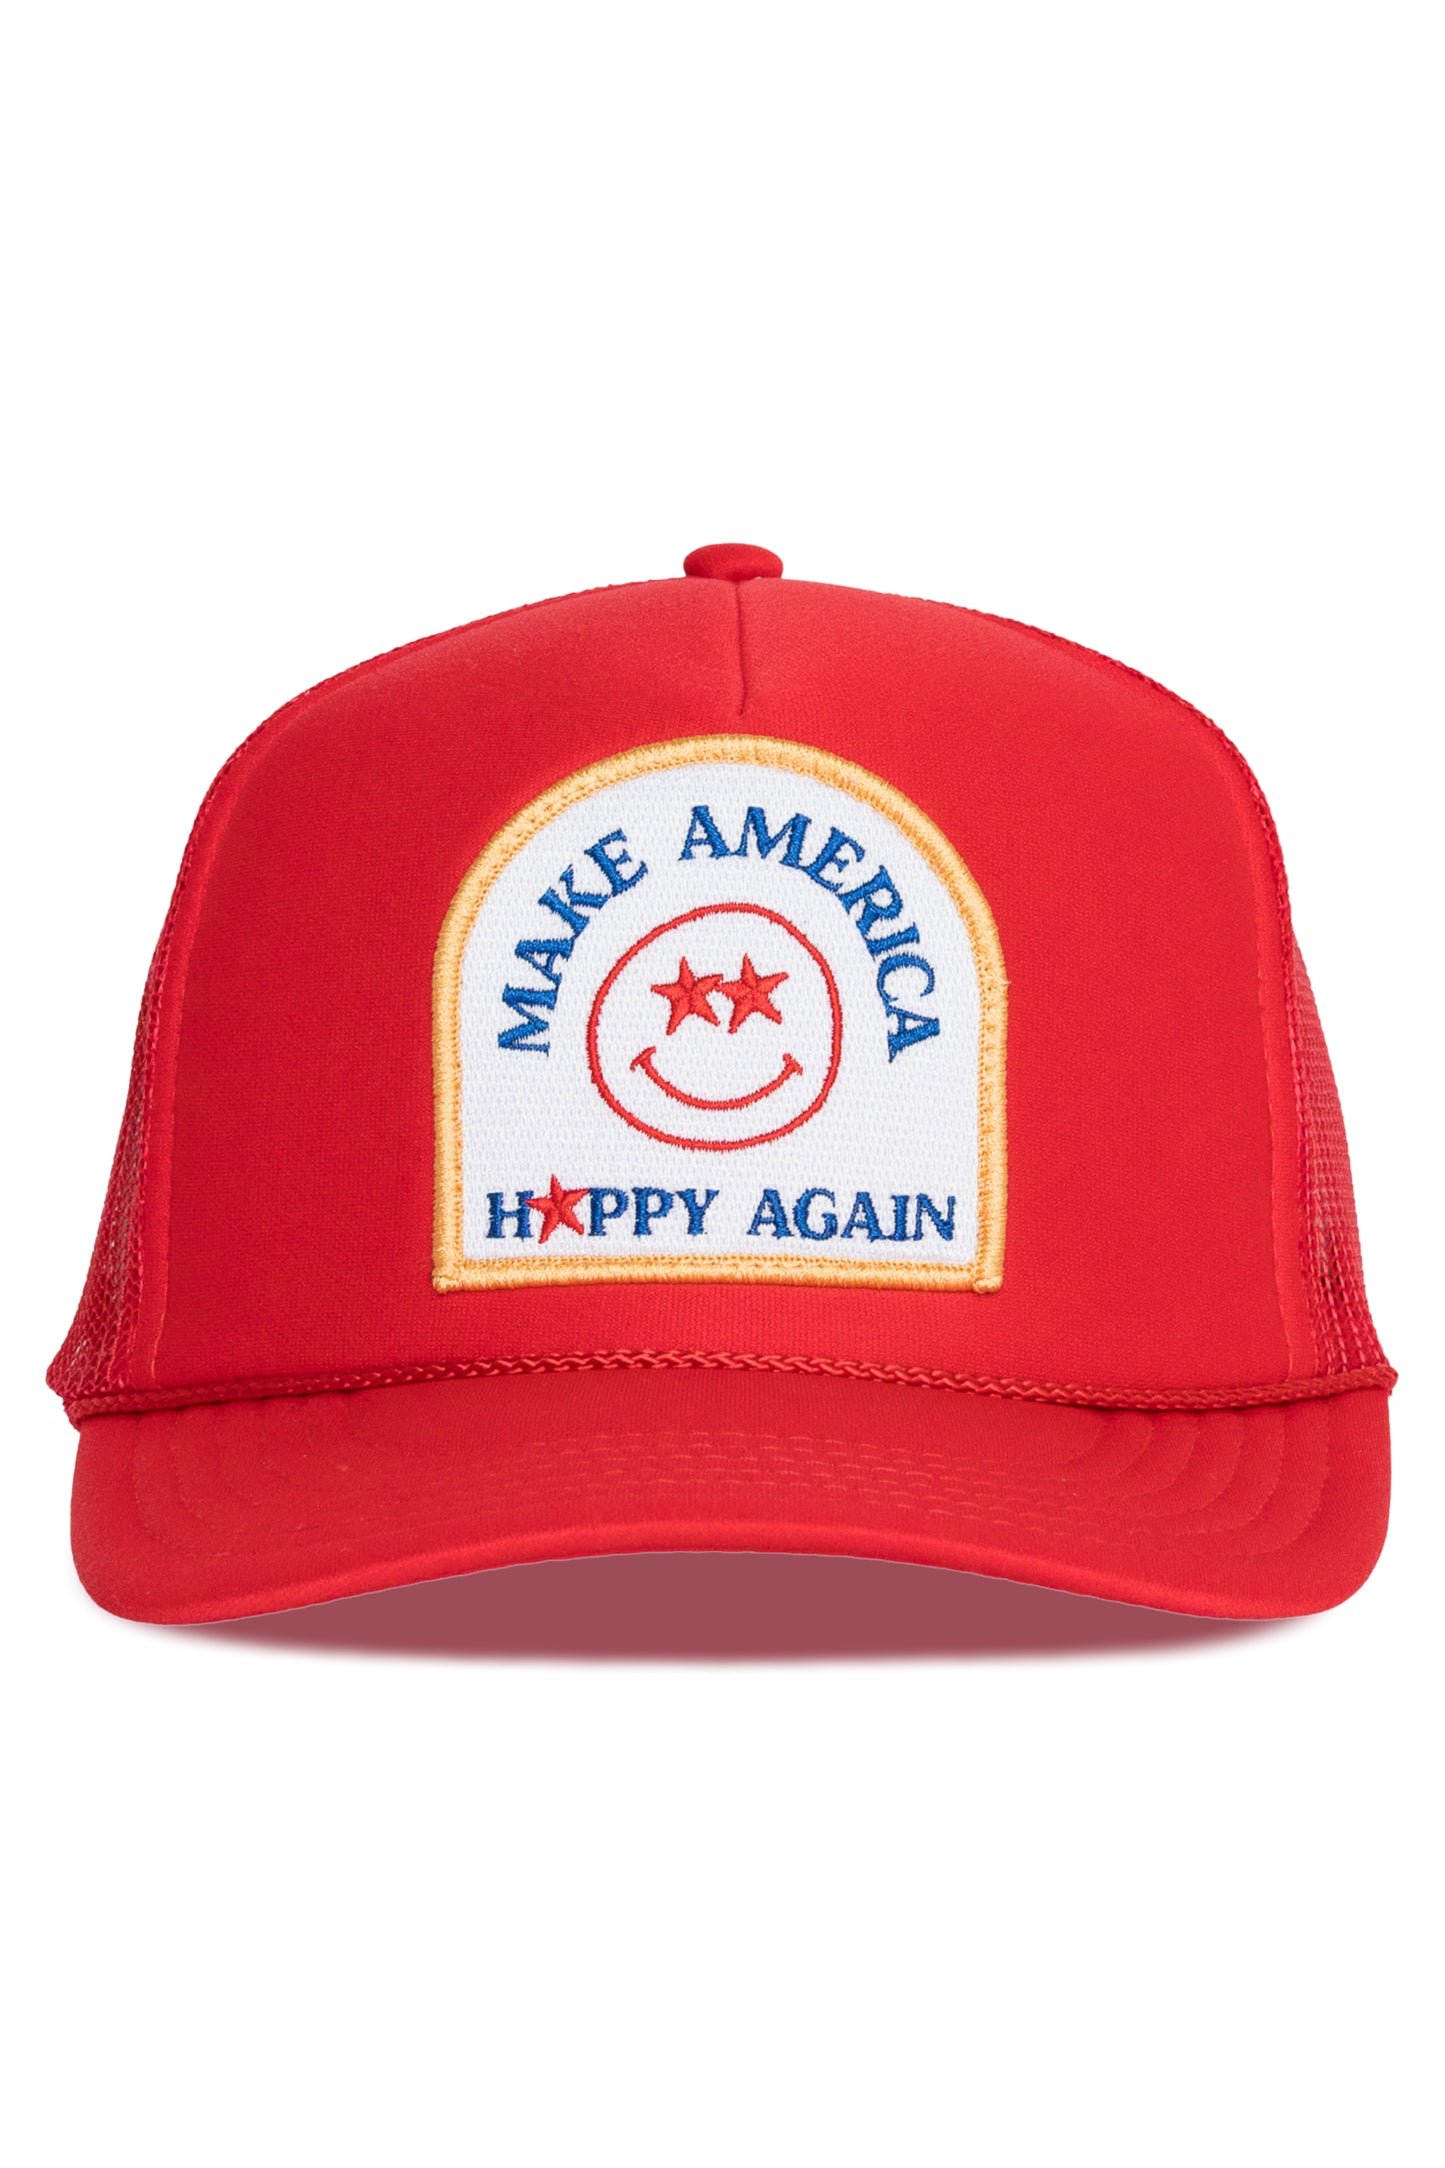 Make America Happy Again - Red